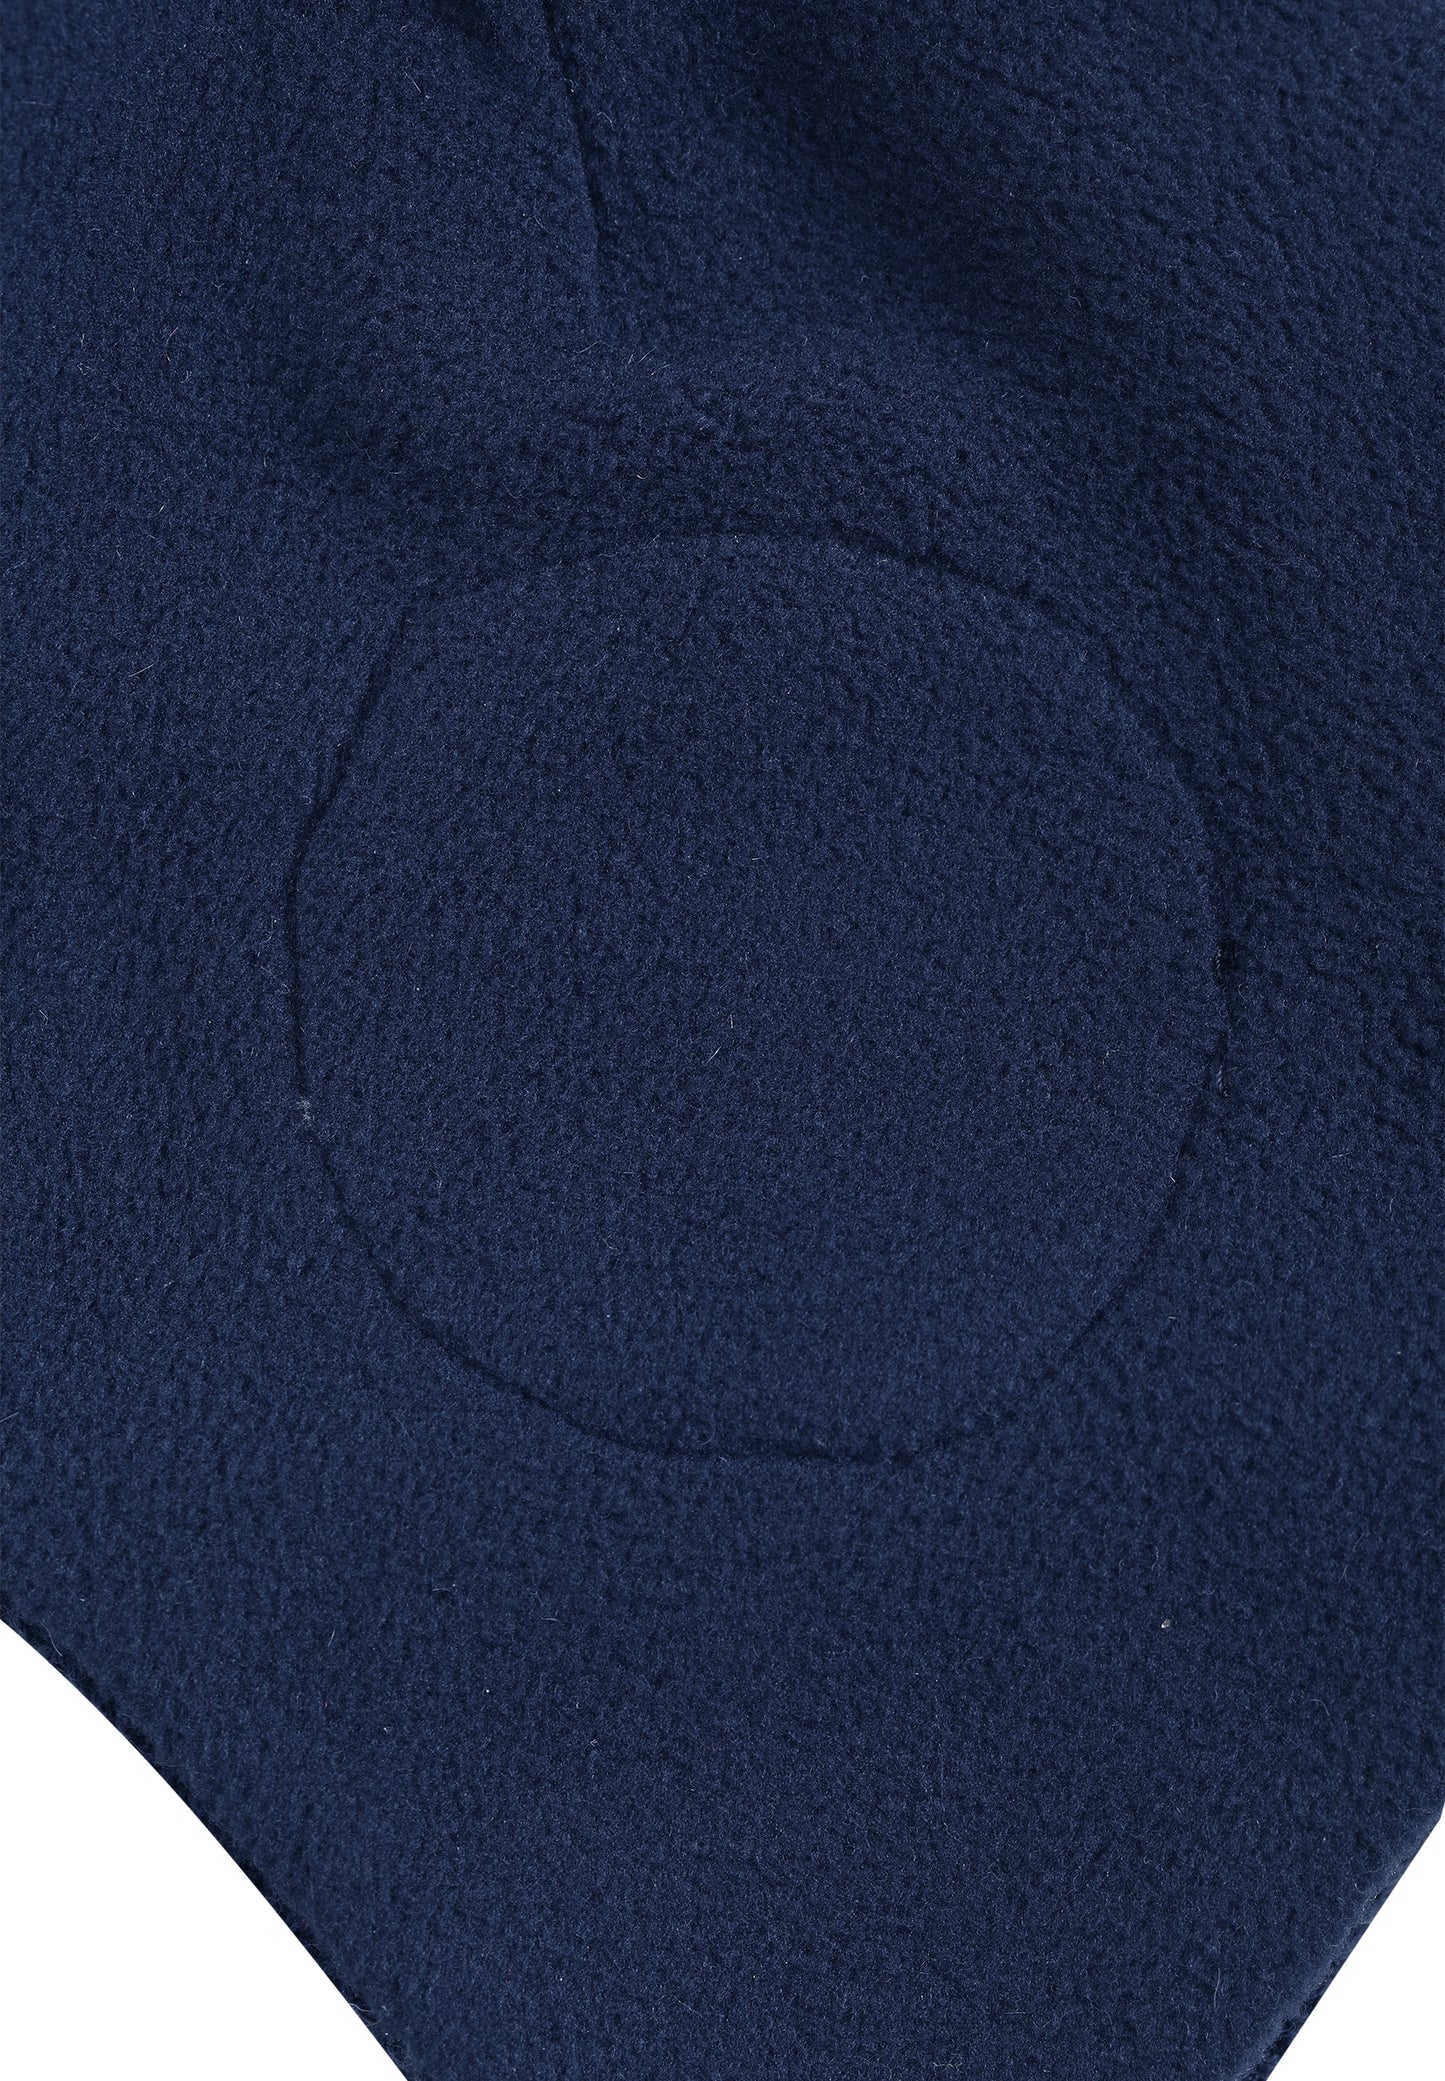 Reima Mütze mit Bändel <br>Auva <br>Gr. 46, 48<br>innen hautfreundliches Fleece<br> aussen warme, wasserabweisende Merino-Wolle<br>Windstopper-Membrane im Ohrbereich<br> KEIN UMTAUSCH